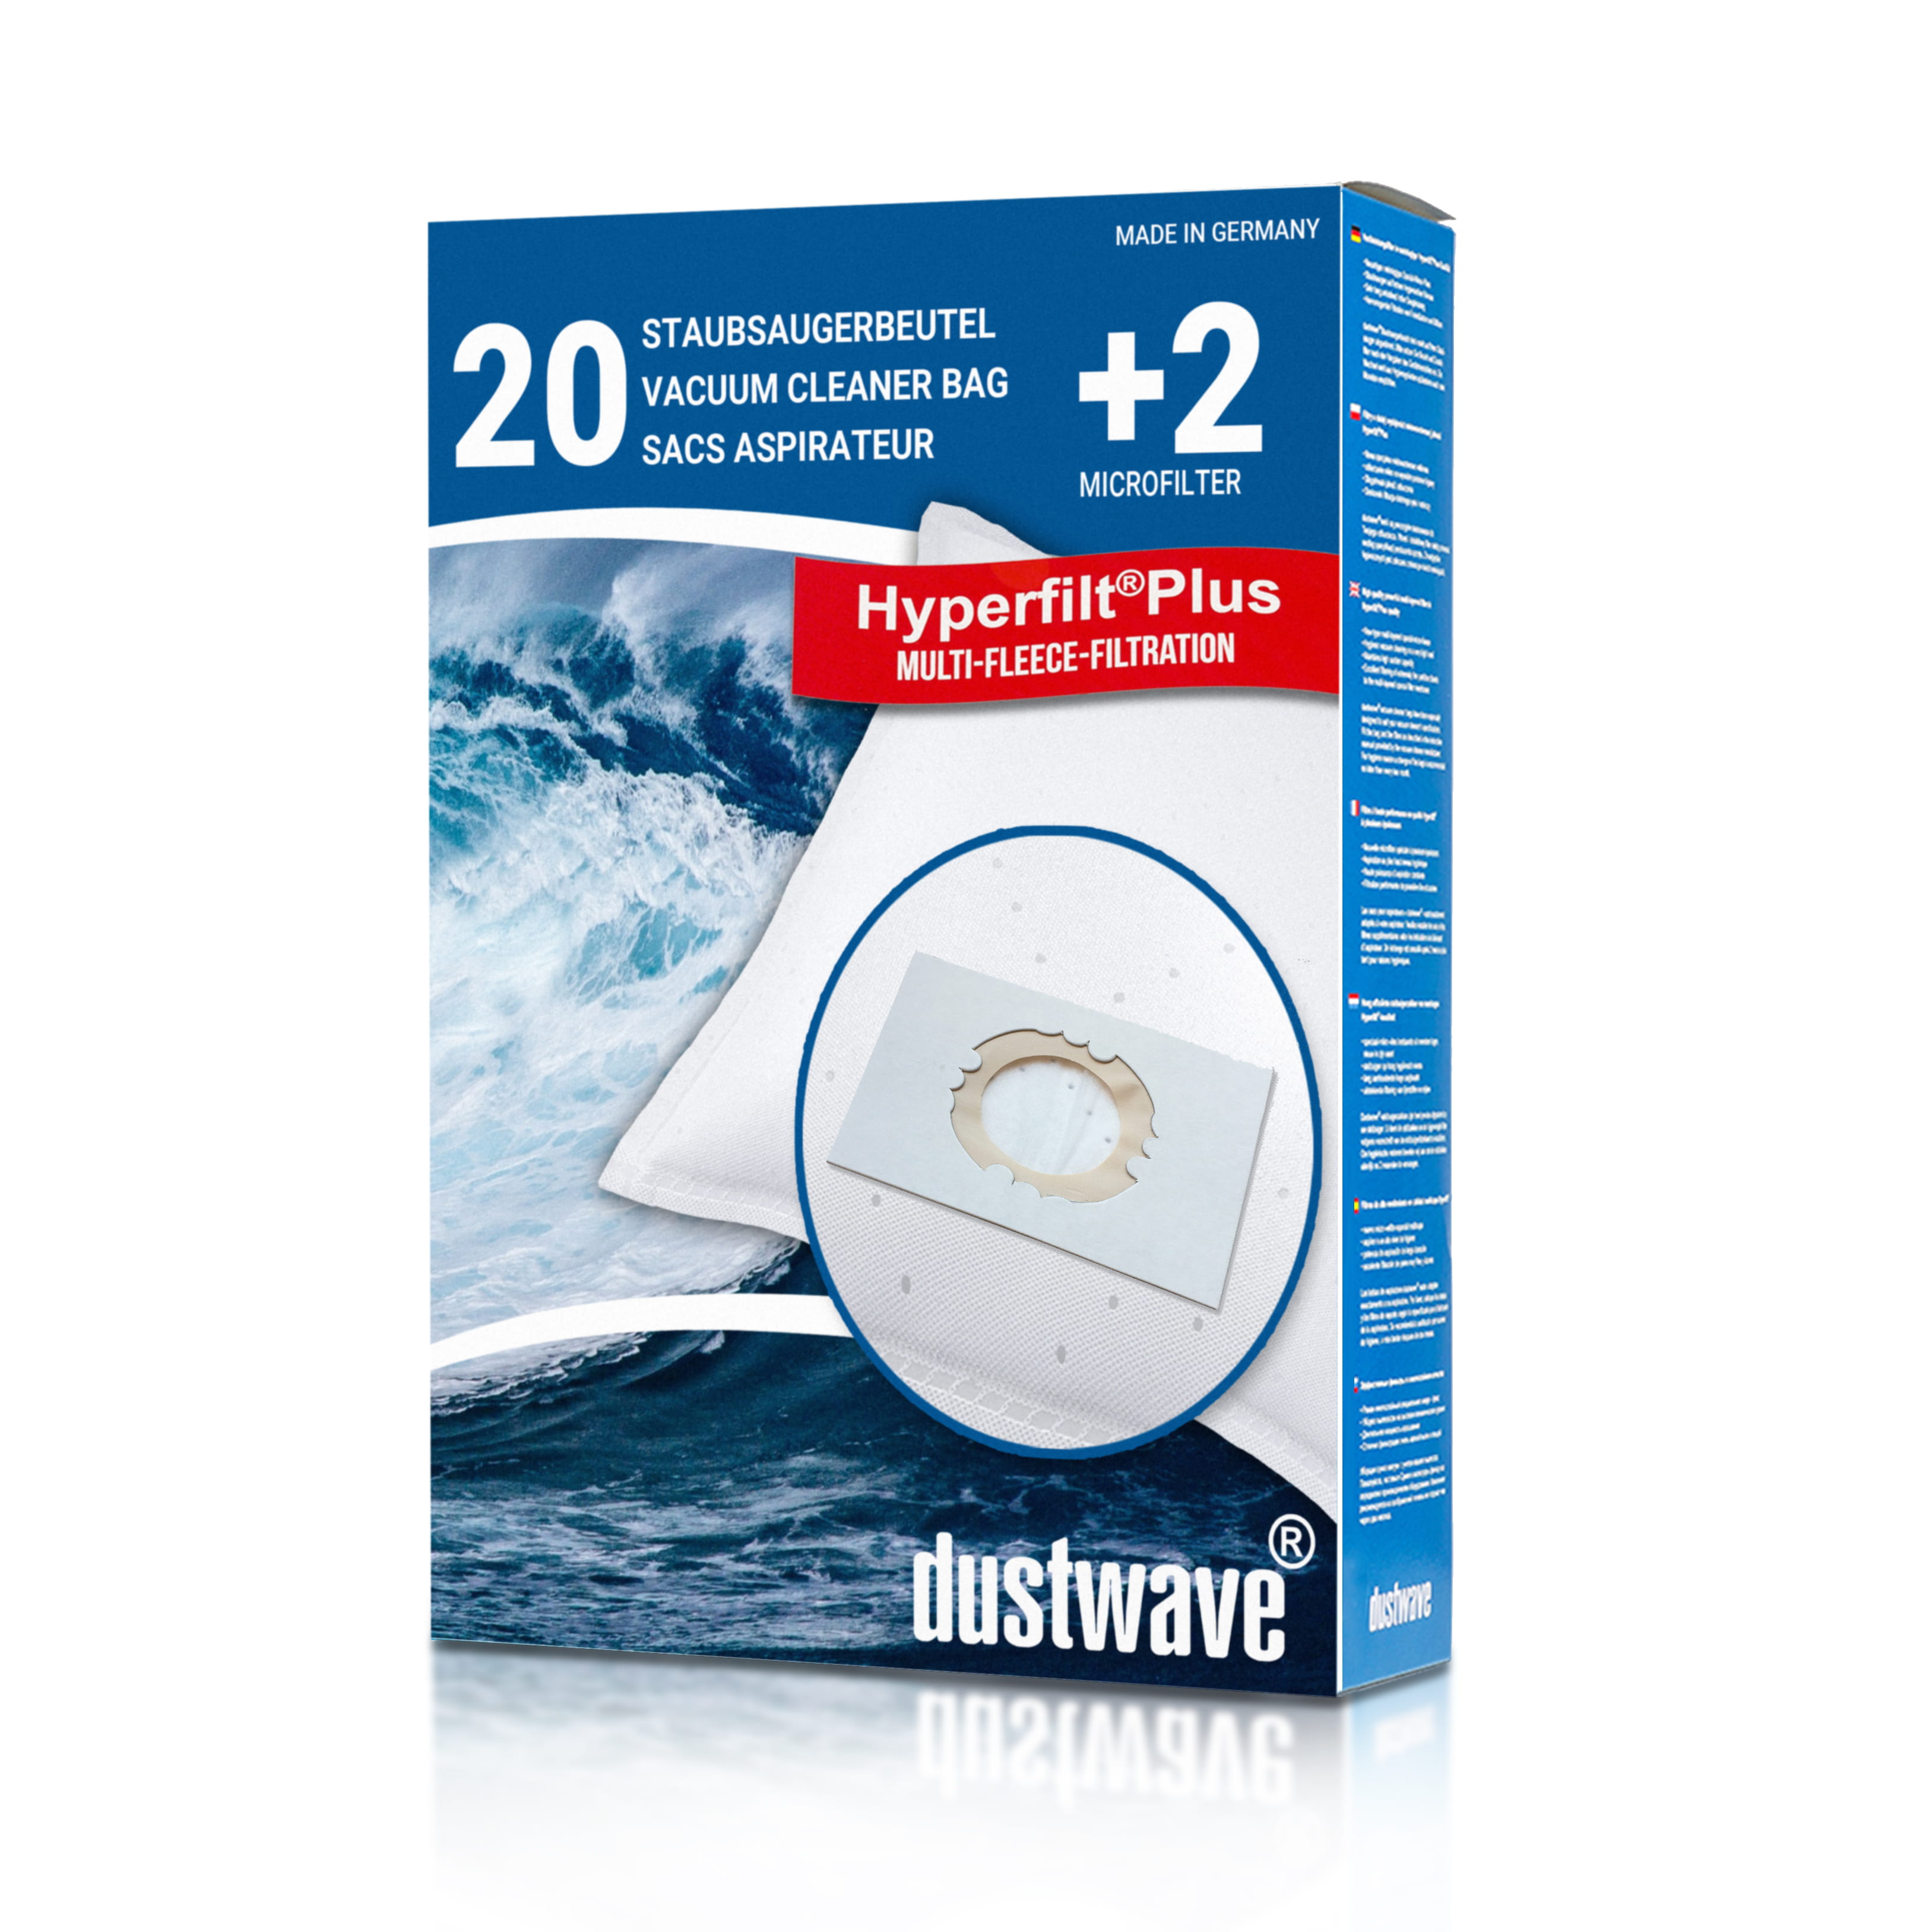 Dustwave® 20 Staubsaugerbeutel für Hoover SCST730EB011 - hocheffizient, mehrlagiges Mikrovlies mit Hygieneverschluss - Made in Germany